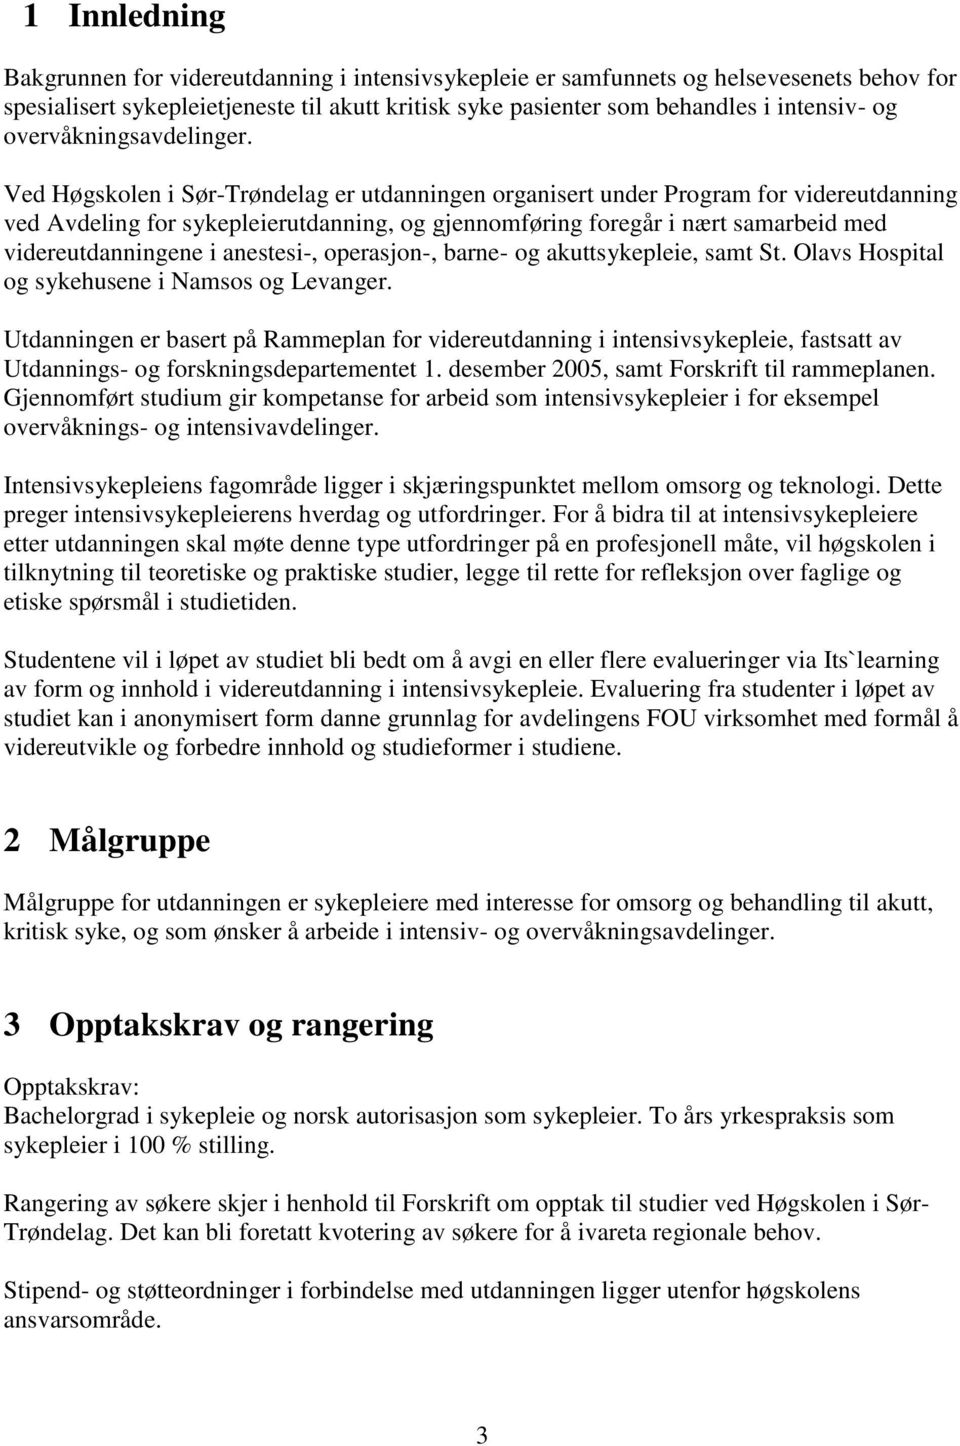 Ved Høgskolen i Sør-Trøndelag er utdanningen organisert under Program for videreutdanning ved Avdeling for sykepleierutdanning, og gjennomføring foregår i nært samarbeid med videreutdanningene i